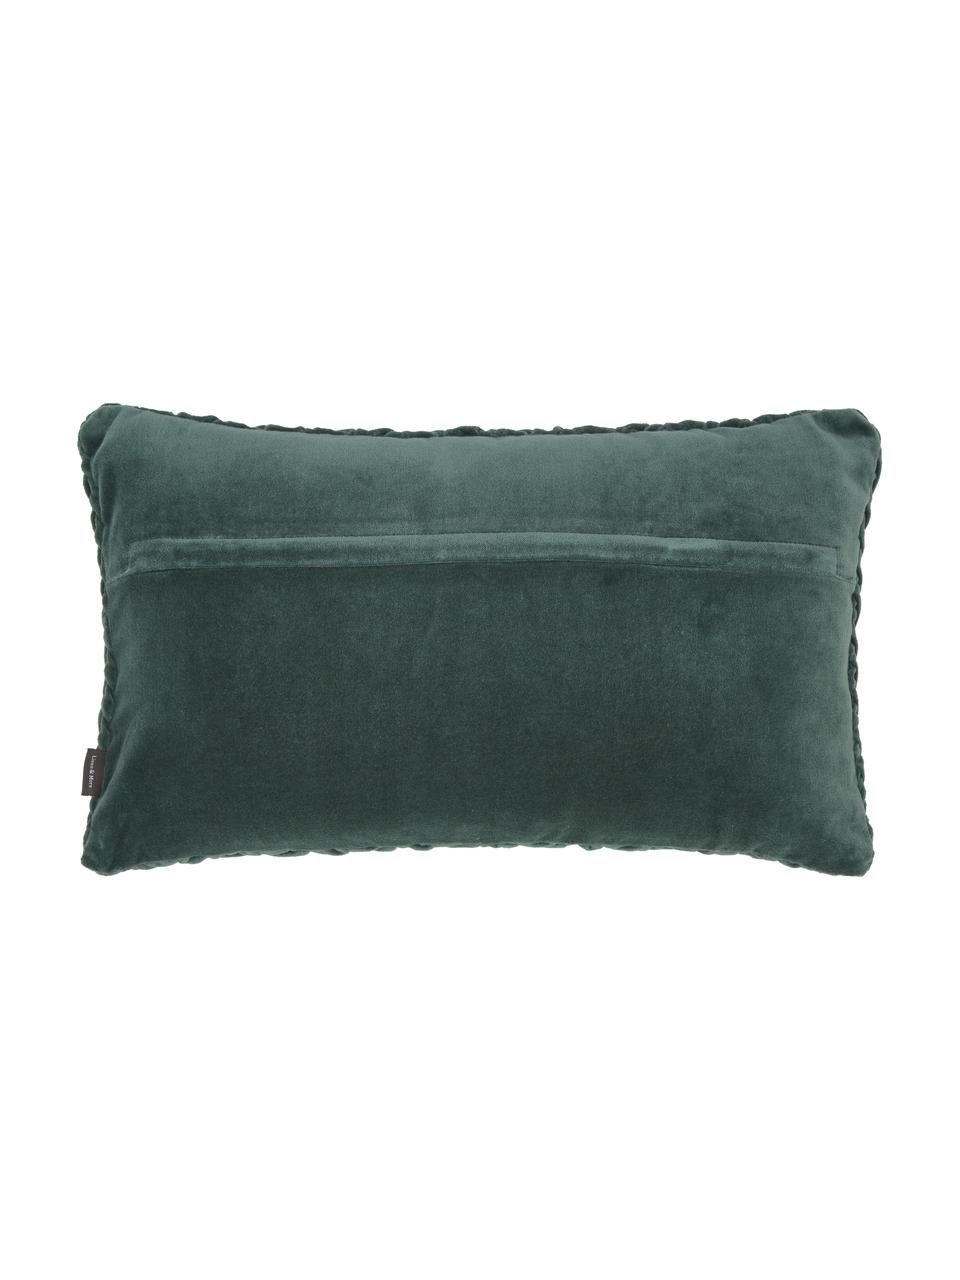 Cuscino in velluto blu-verde con superficie arruffata Smock, Rivestimento: 100% velluto di cotone, Blu-verde, Larg. 30 x Lung. 50 cm